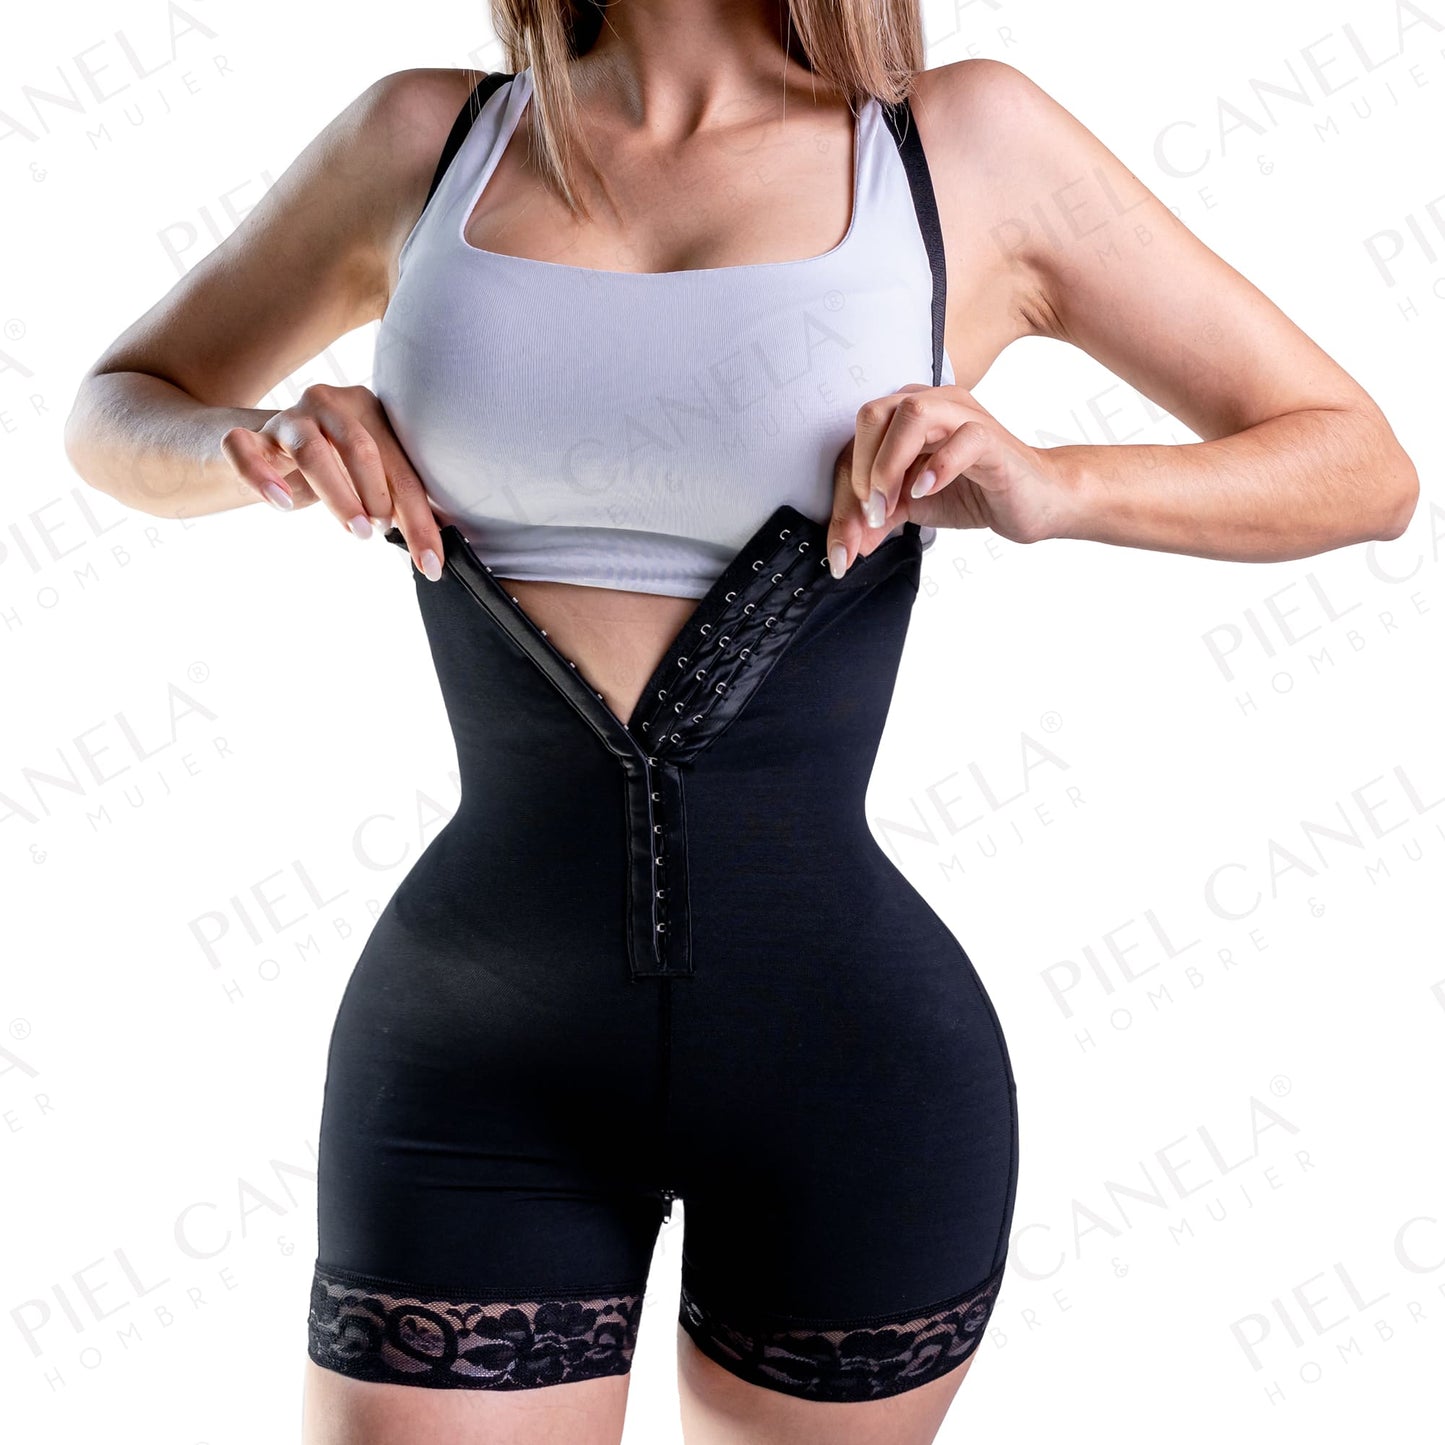 
                  
                    Faja levanta booty es de un material transpirable y suave qué se ajusta a a tu piel ayudándote a levantar el glúteo y le da una forma espectacular teniendo un efecto push up y haciéndolo más definido.
                  
                